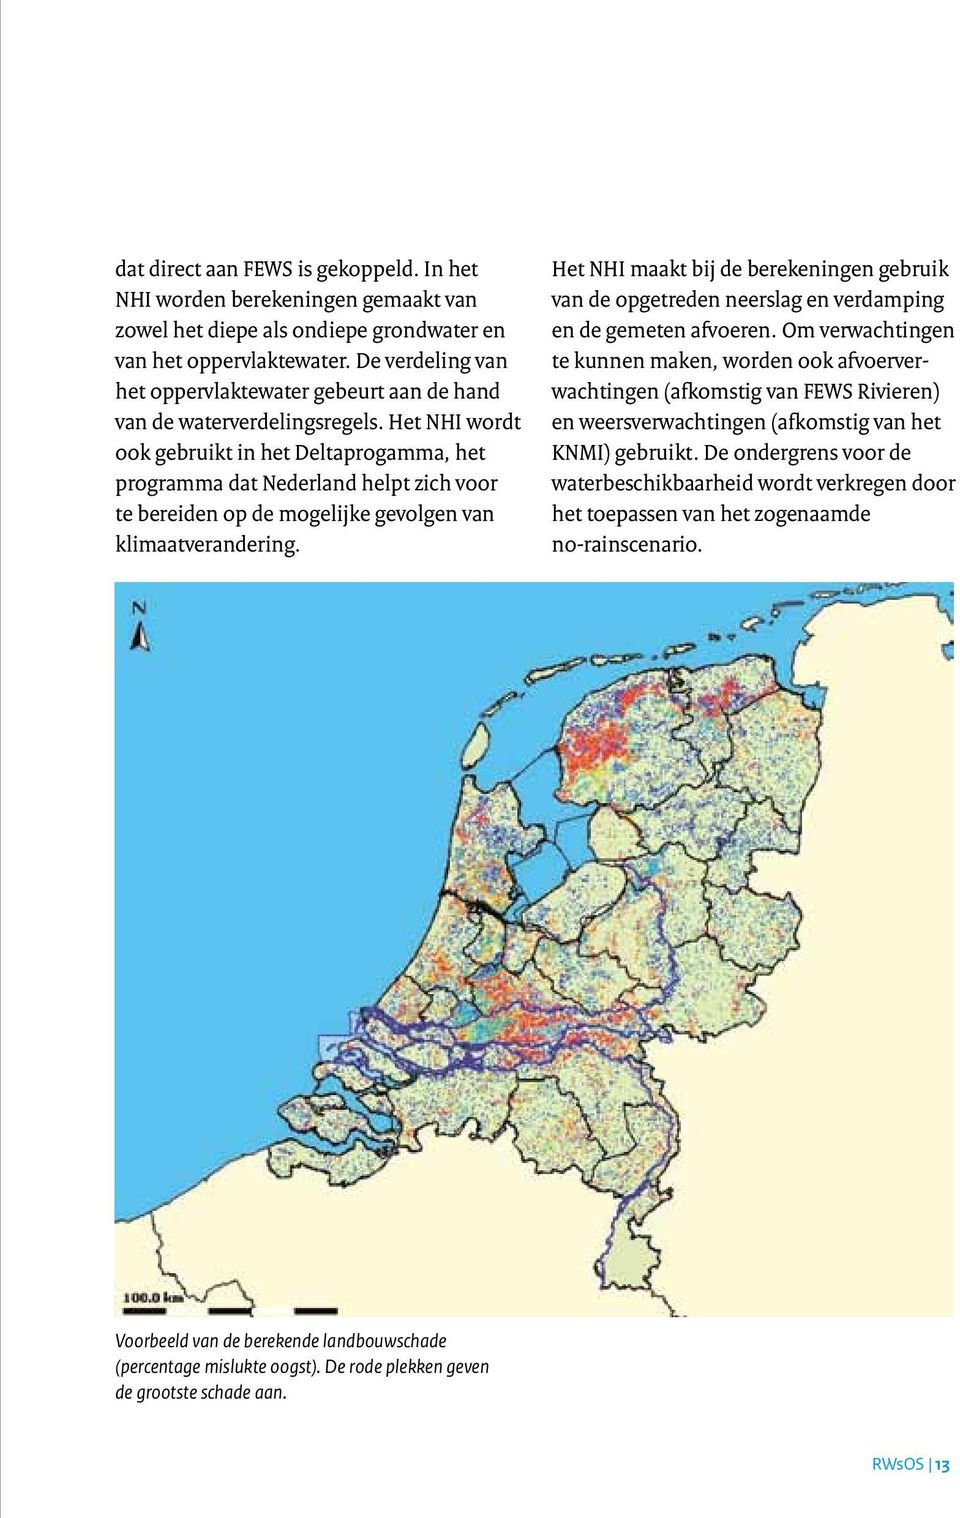 Het NHI wordt ook gebruikt in het Deltaprogamma, het programma dat Nederland helpt zich voor te bereiden op de mogelijke gevolgen van klimaatverandering.